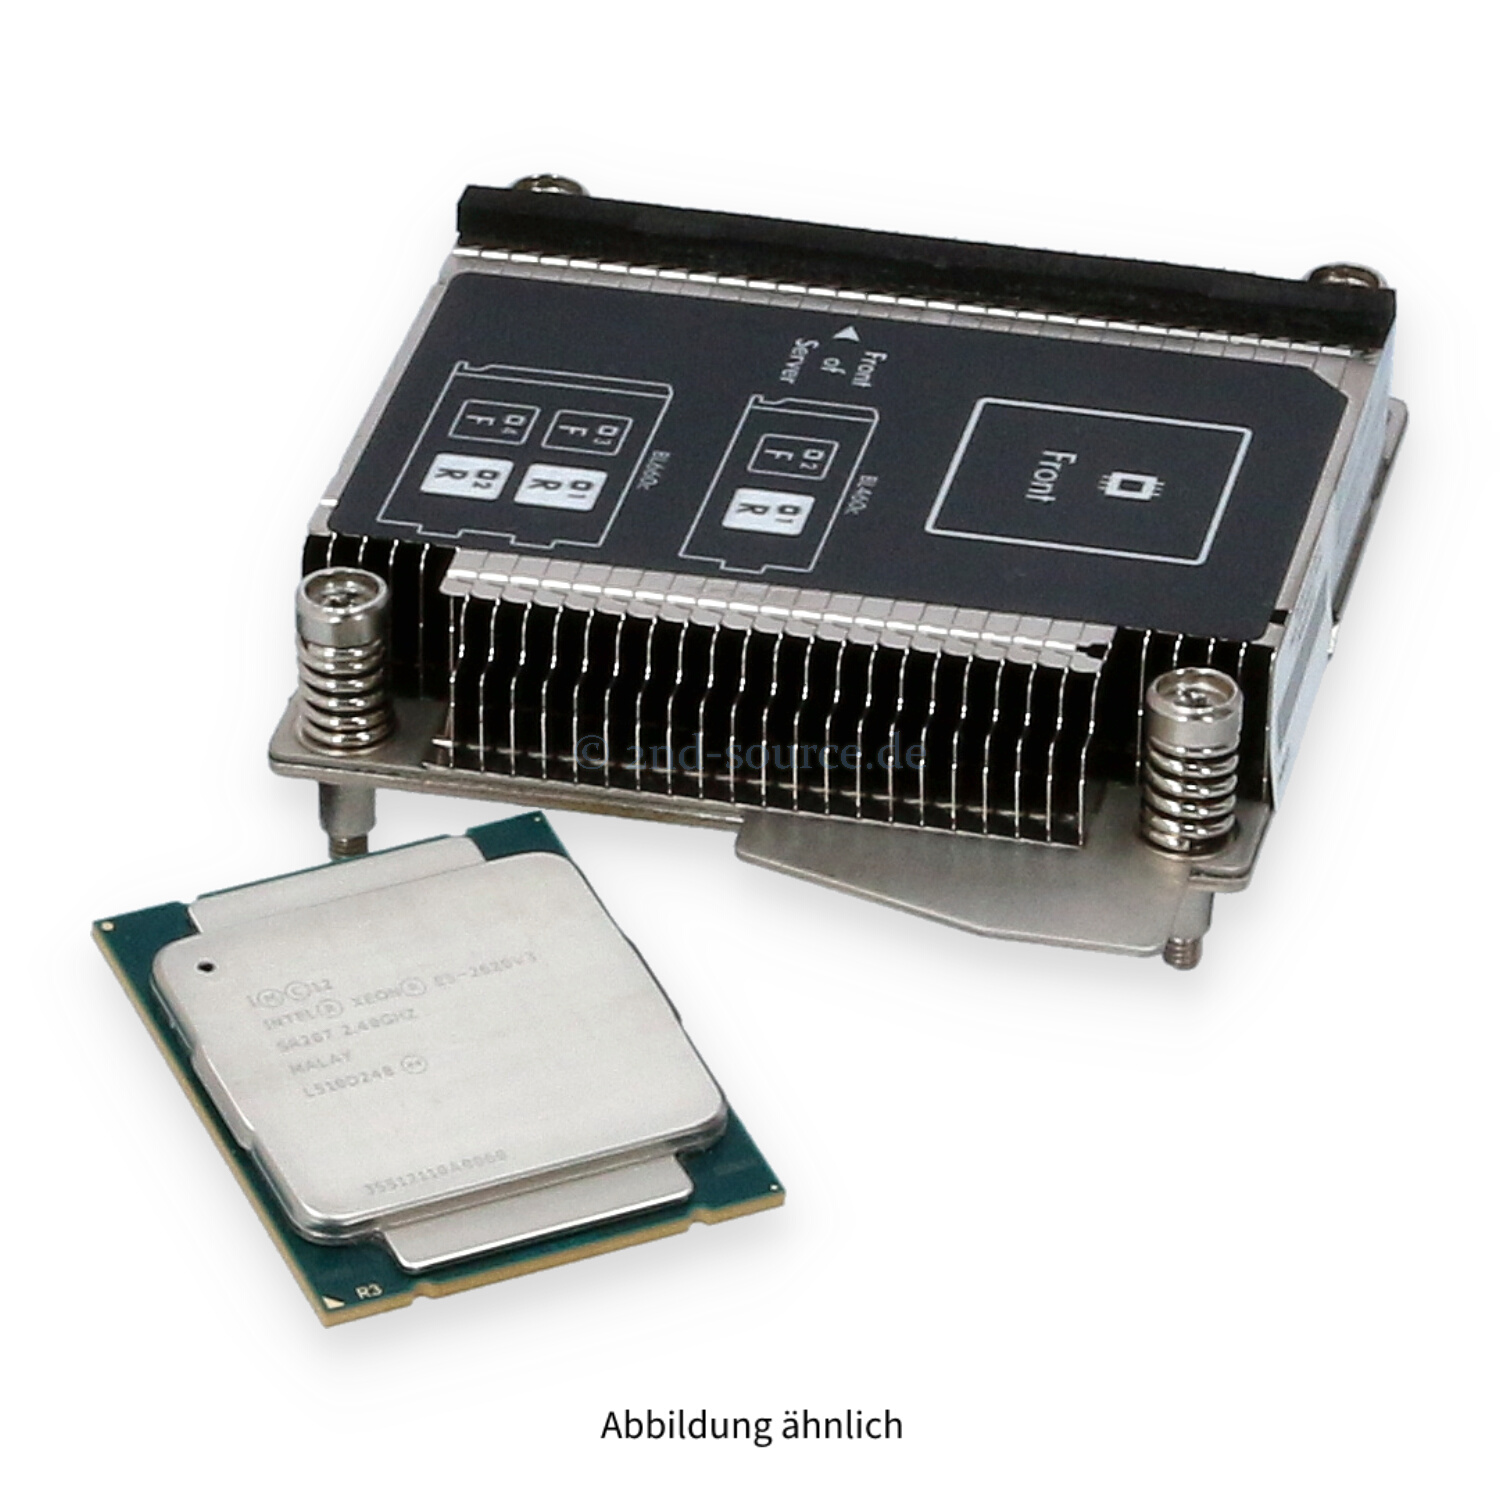 HPE BL460c G9 Intel Xeon E5-2620 v3 (2.40GHz 15MB 6-Core 85W) CPU Kit 726995-B21 SR207